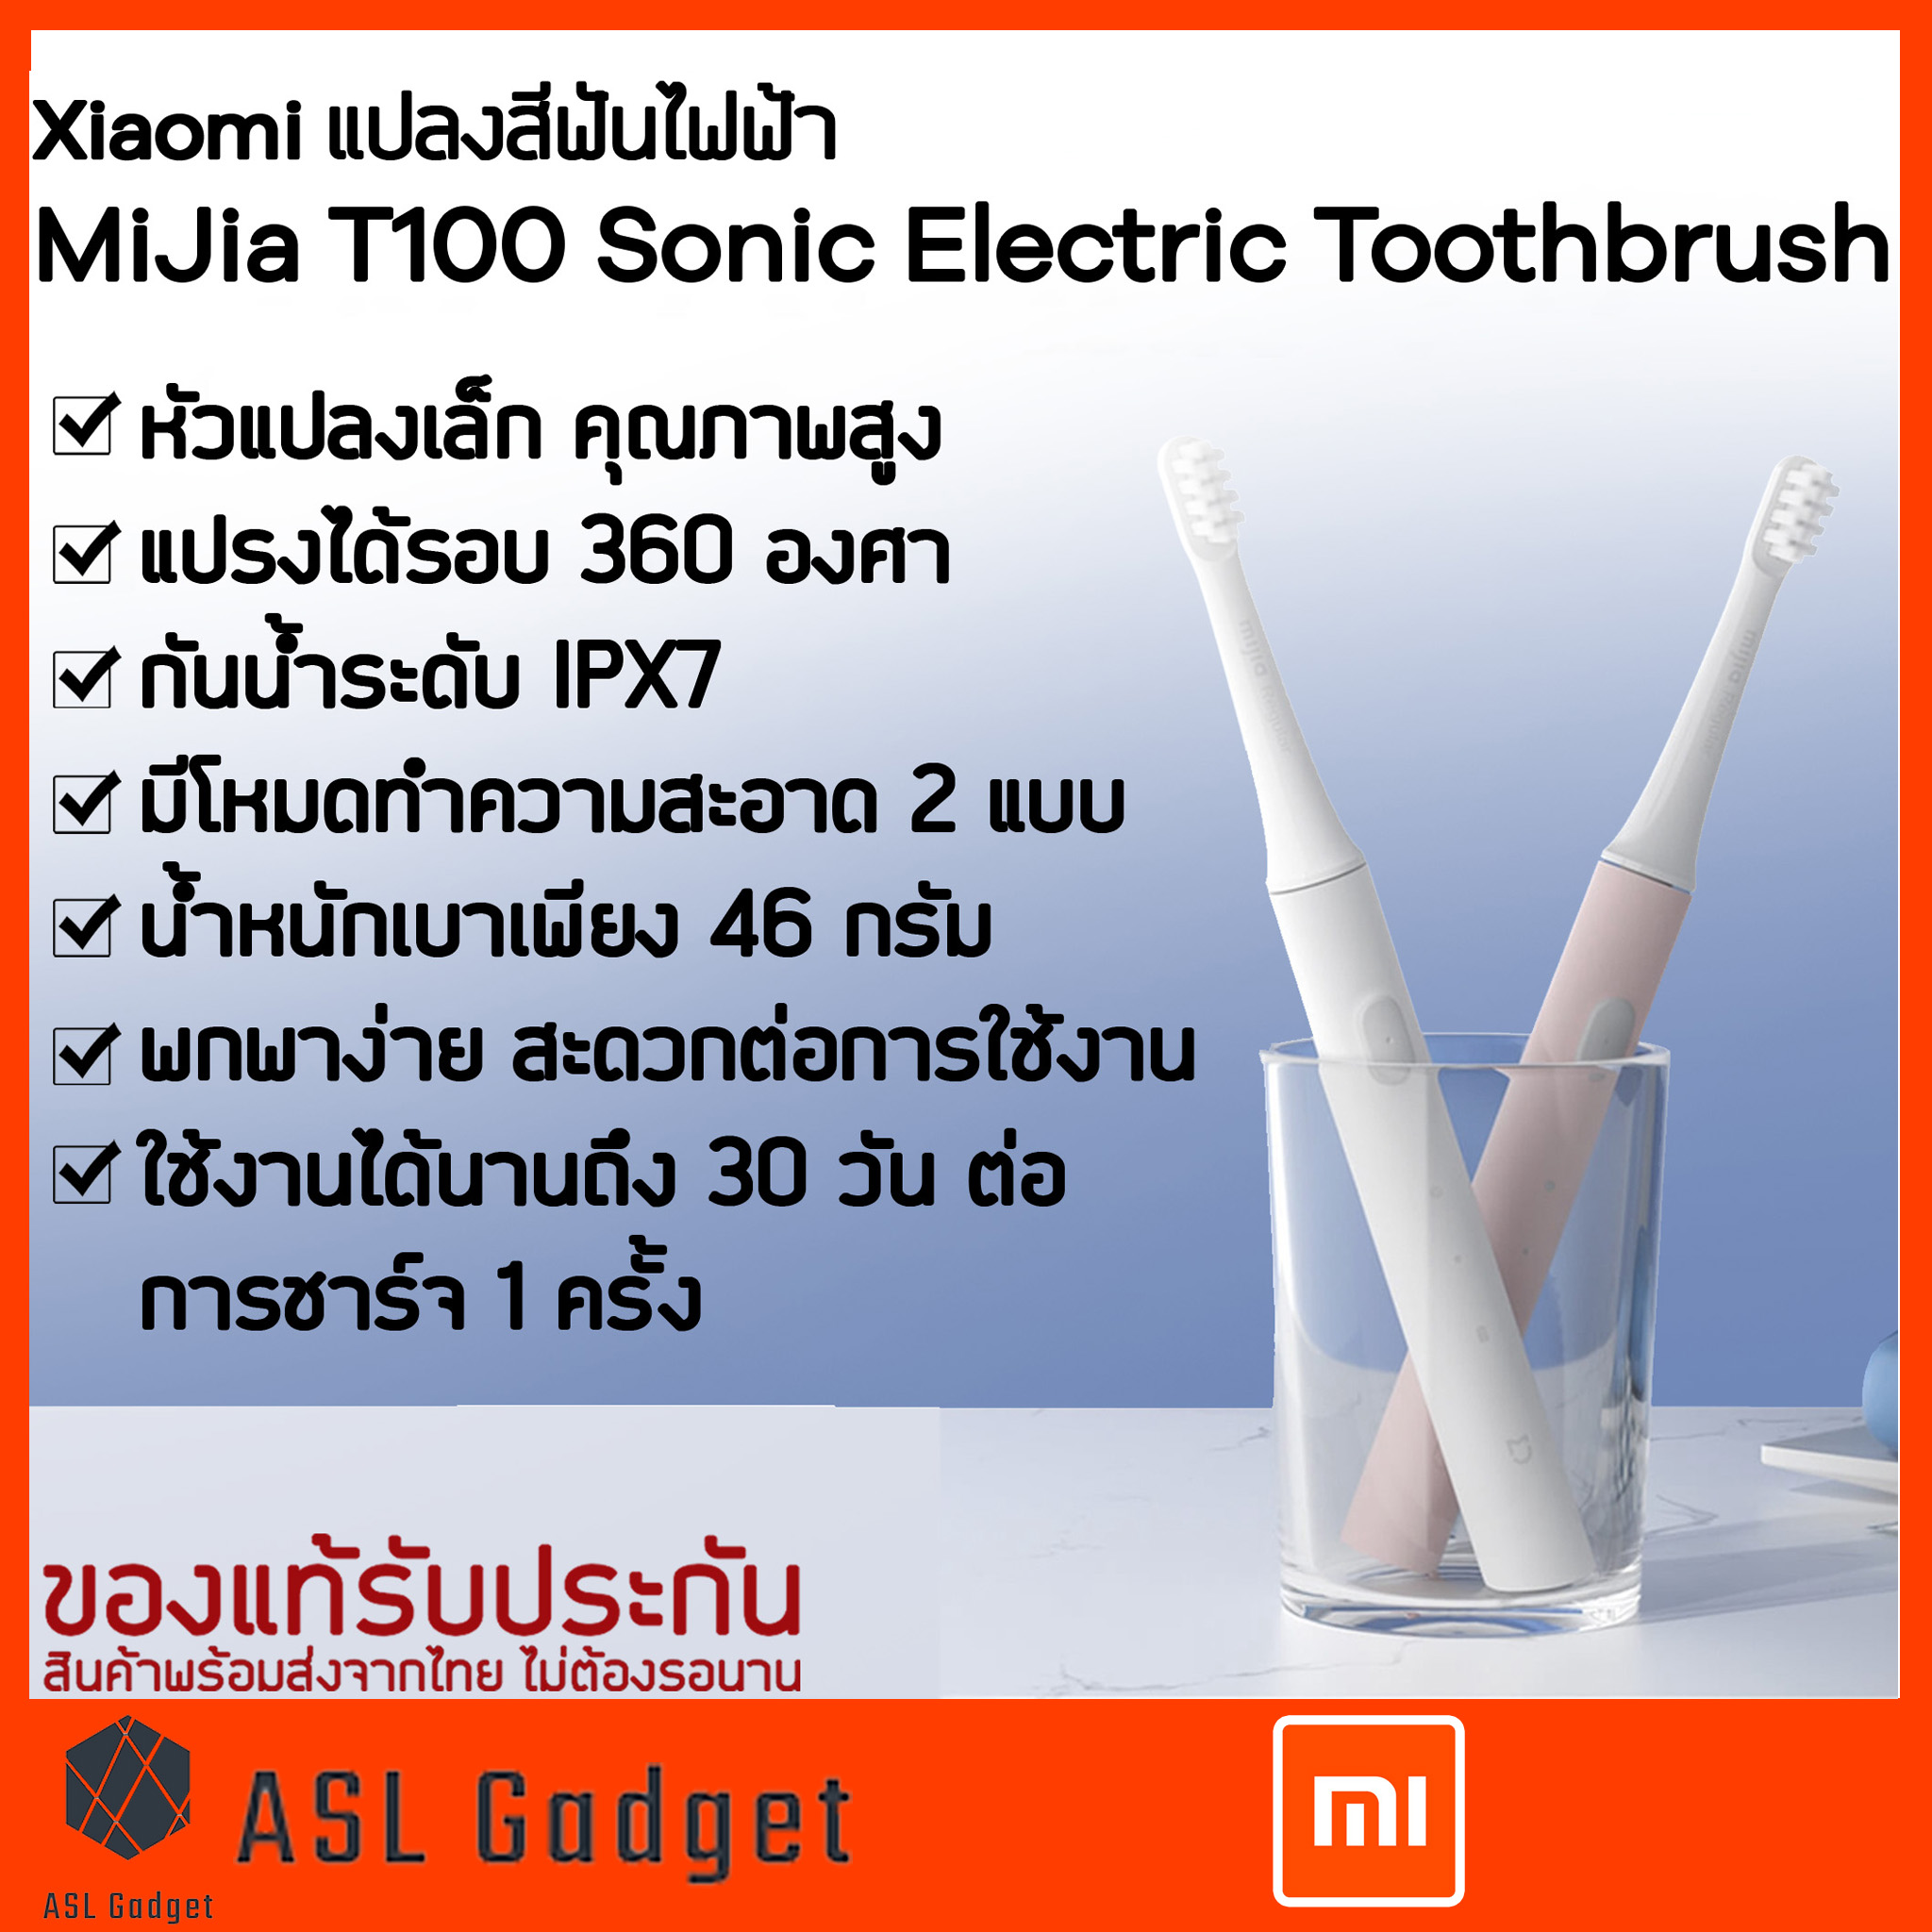 Xiaomi แปรงสีฟันไฟฟ้า MiJia T100 Sonic Electric Toothbrush หัวแปรงเล็กคุณภาพสูง แปรงได้รอบ 360 องศา ขนแปรงนุ่ม